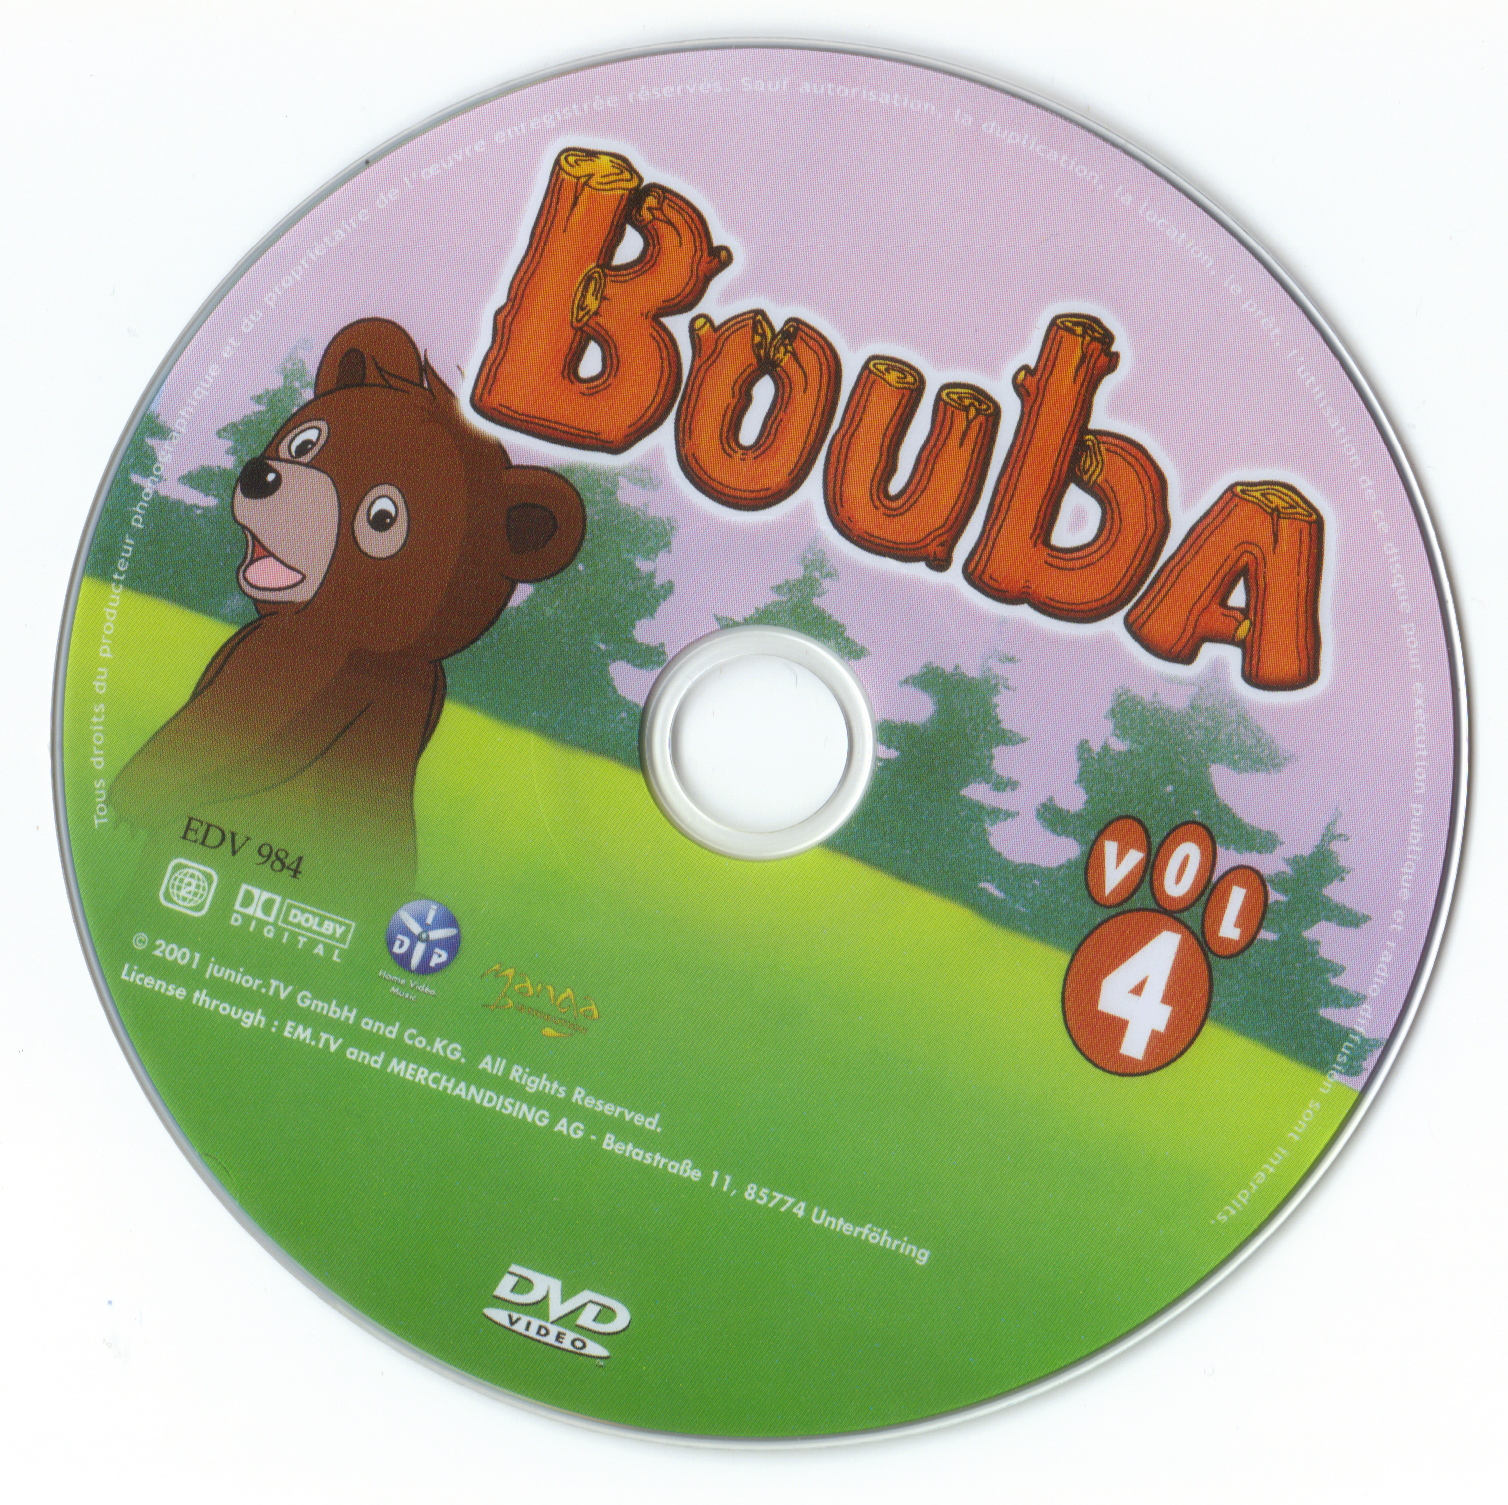 Bouba vol 04